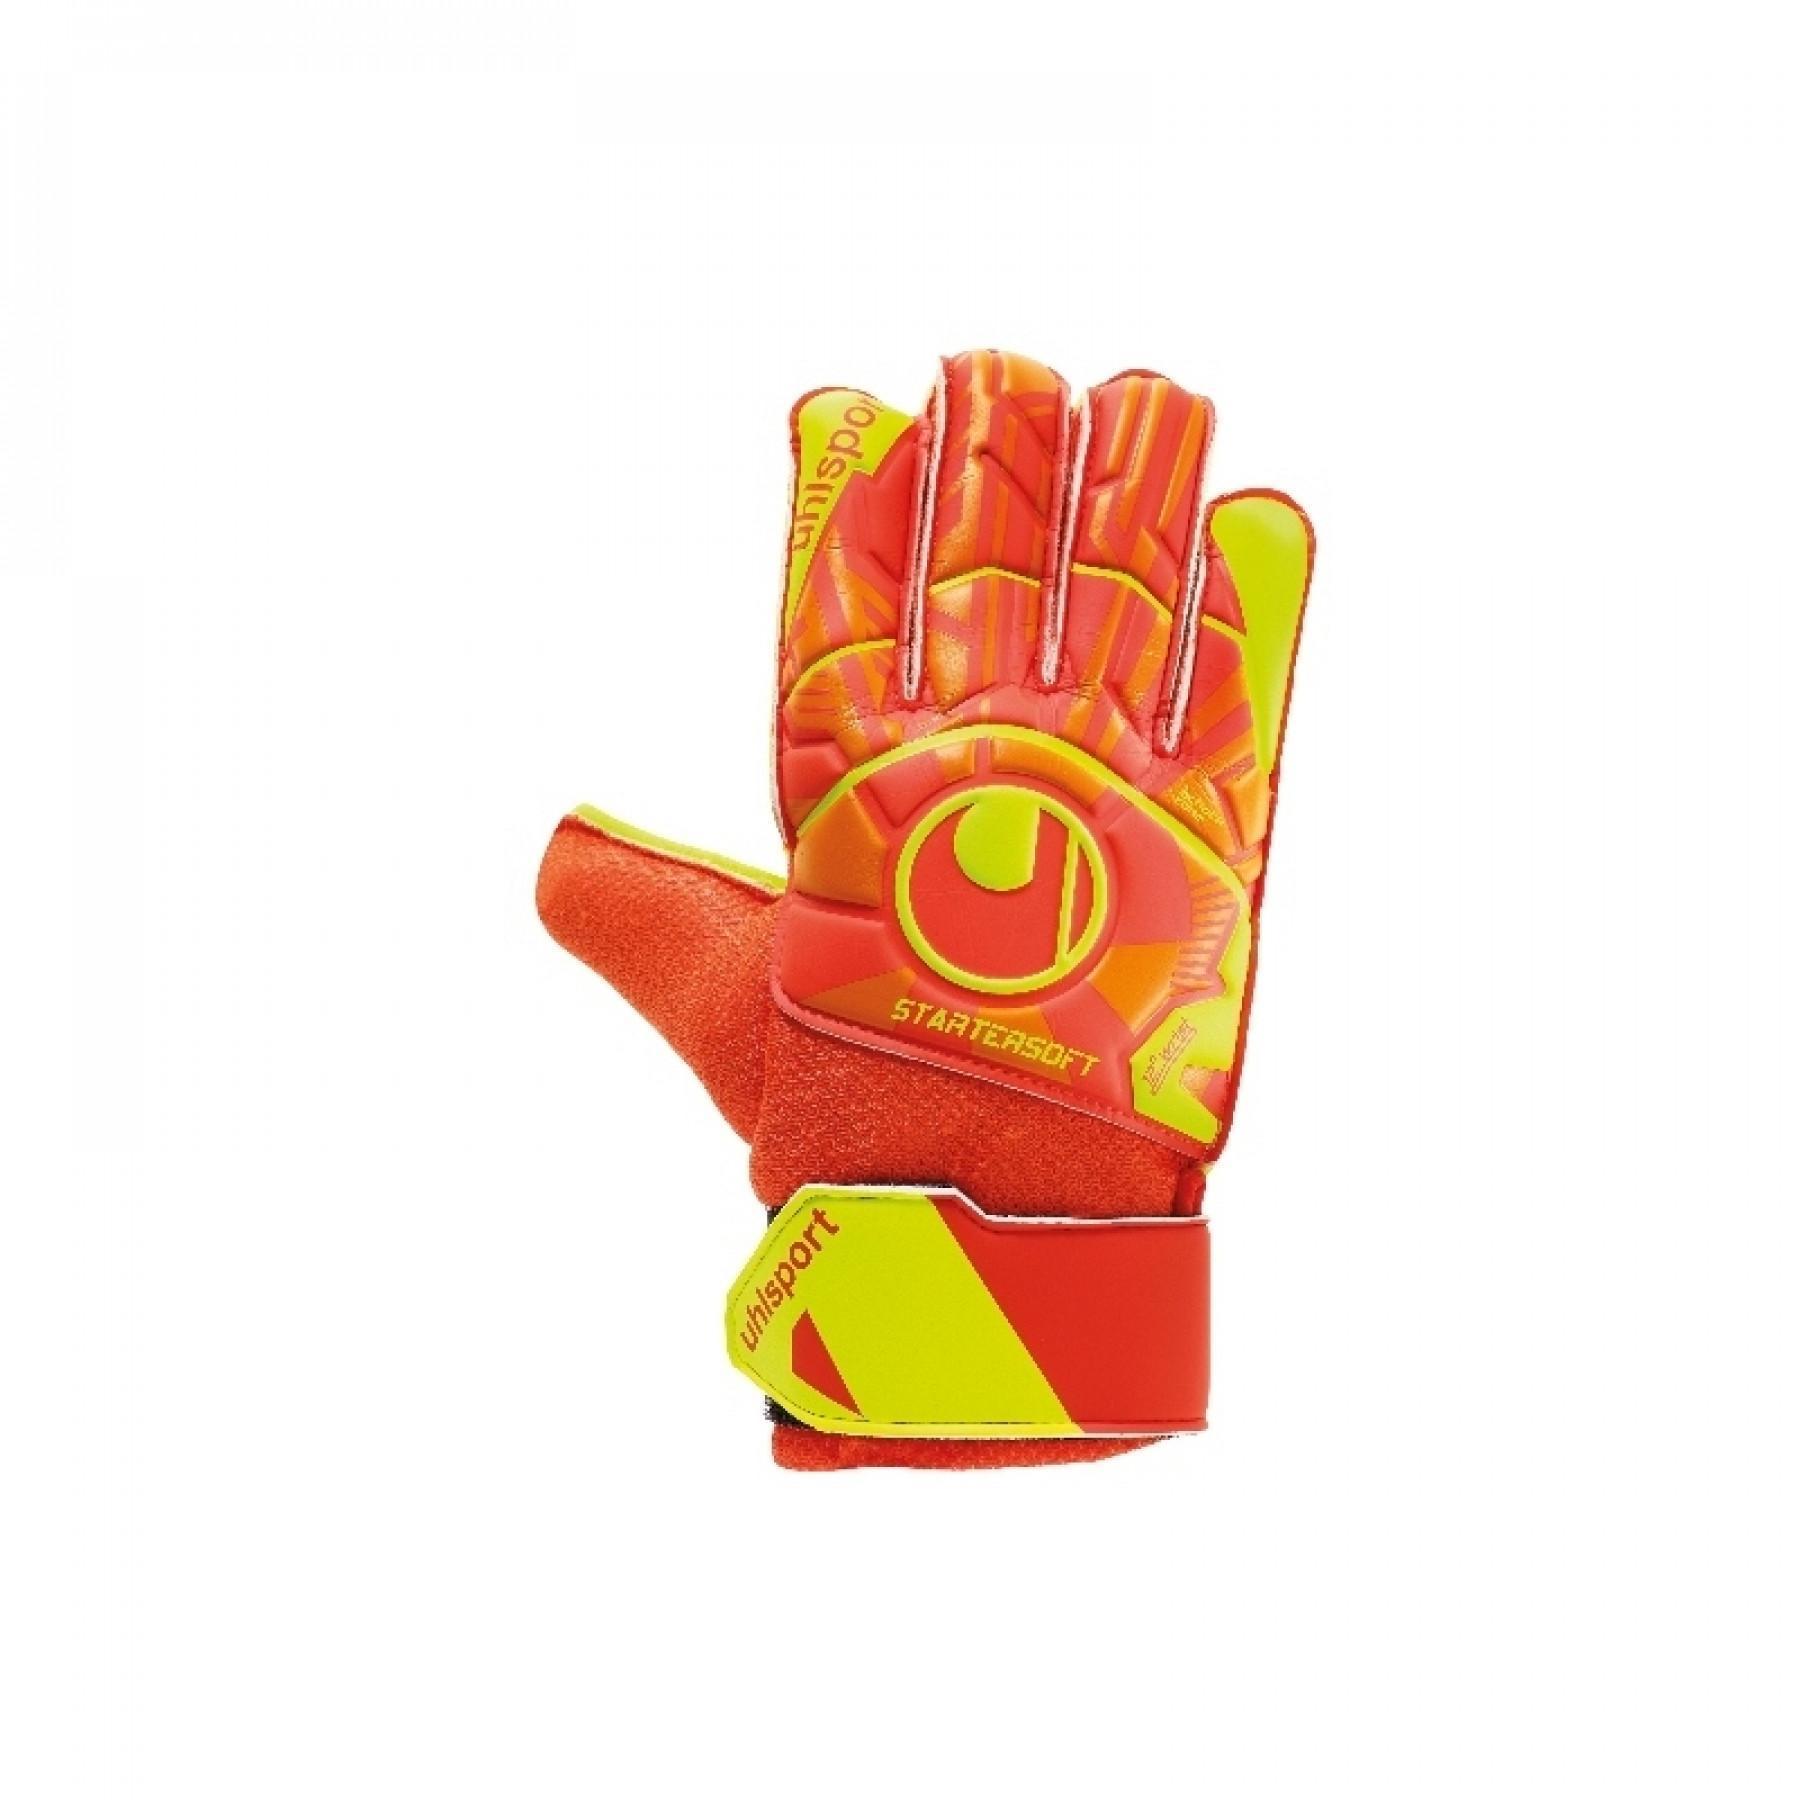 Ulhsport Dynamic Impulse Startersoft Junior Goalie Gloves